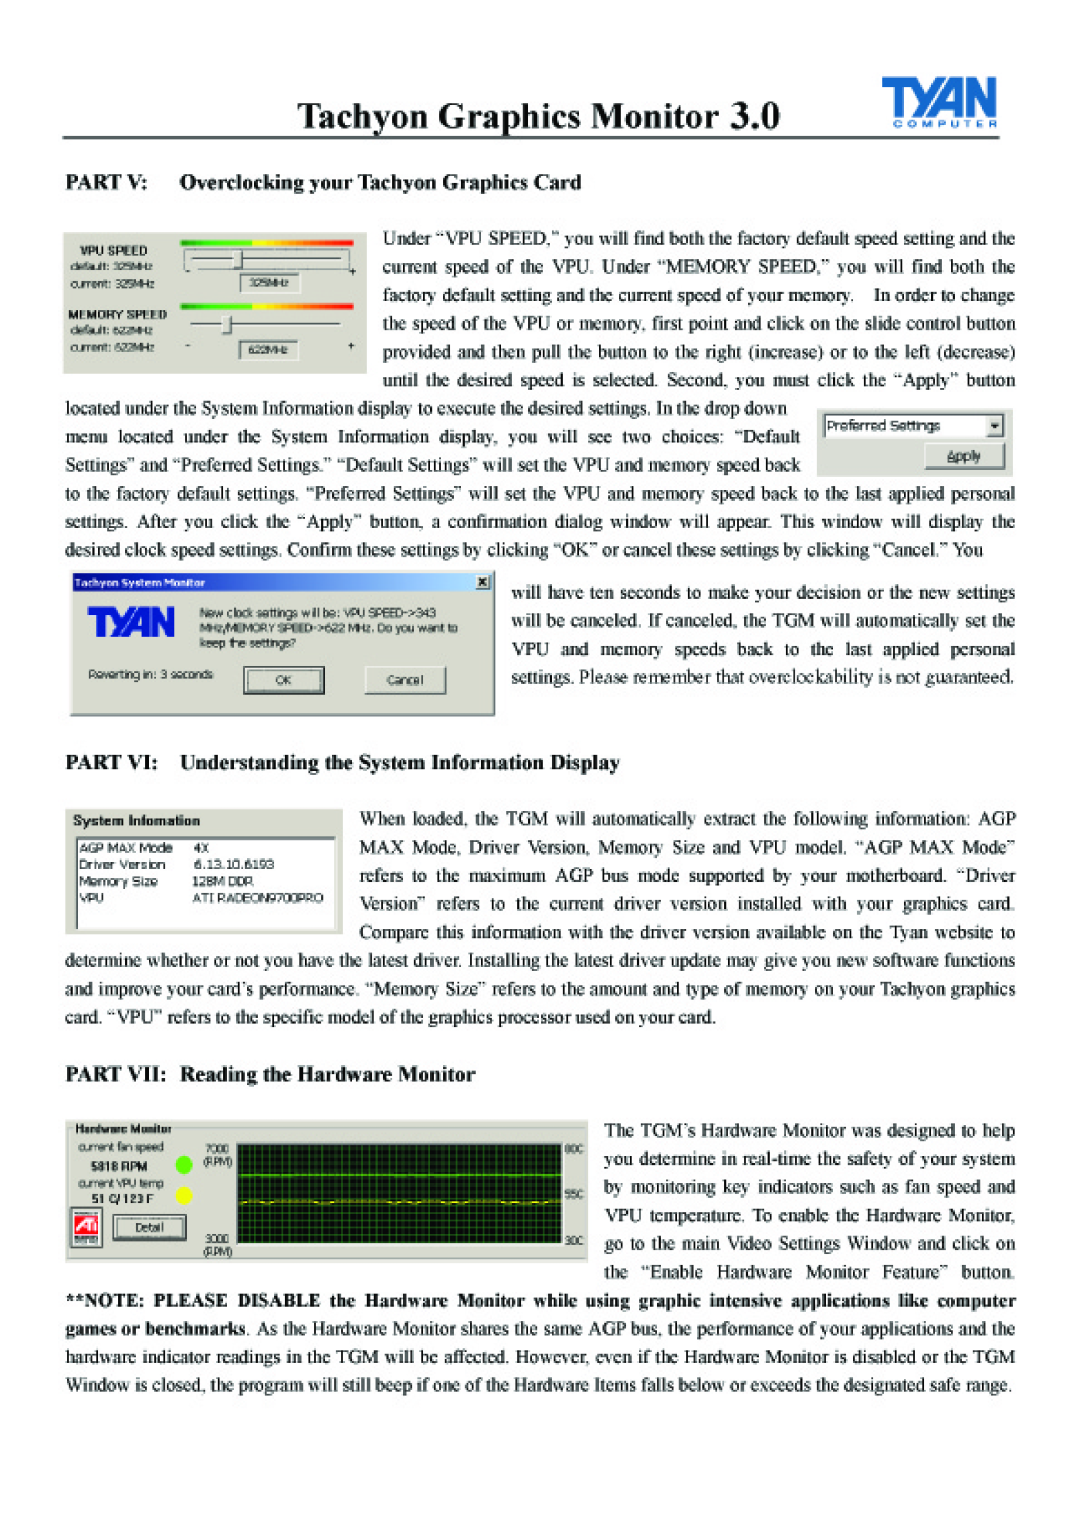 Tyan Computer tgm 300 manual 